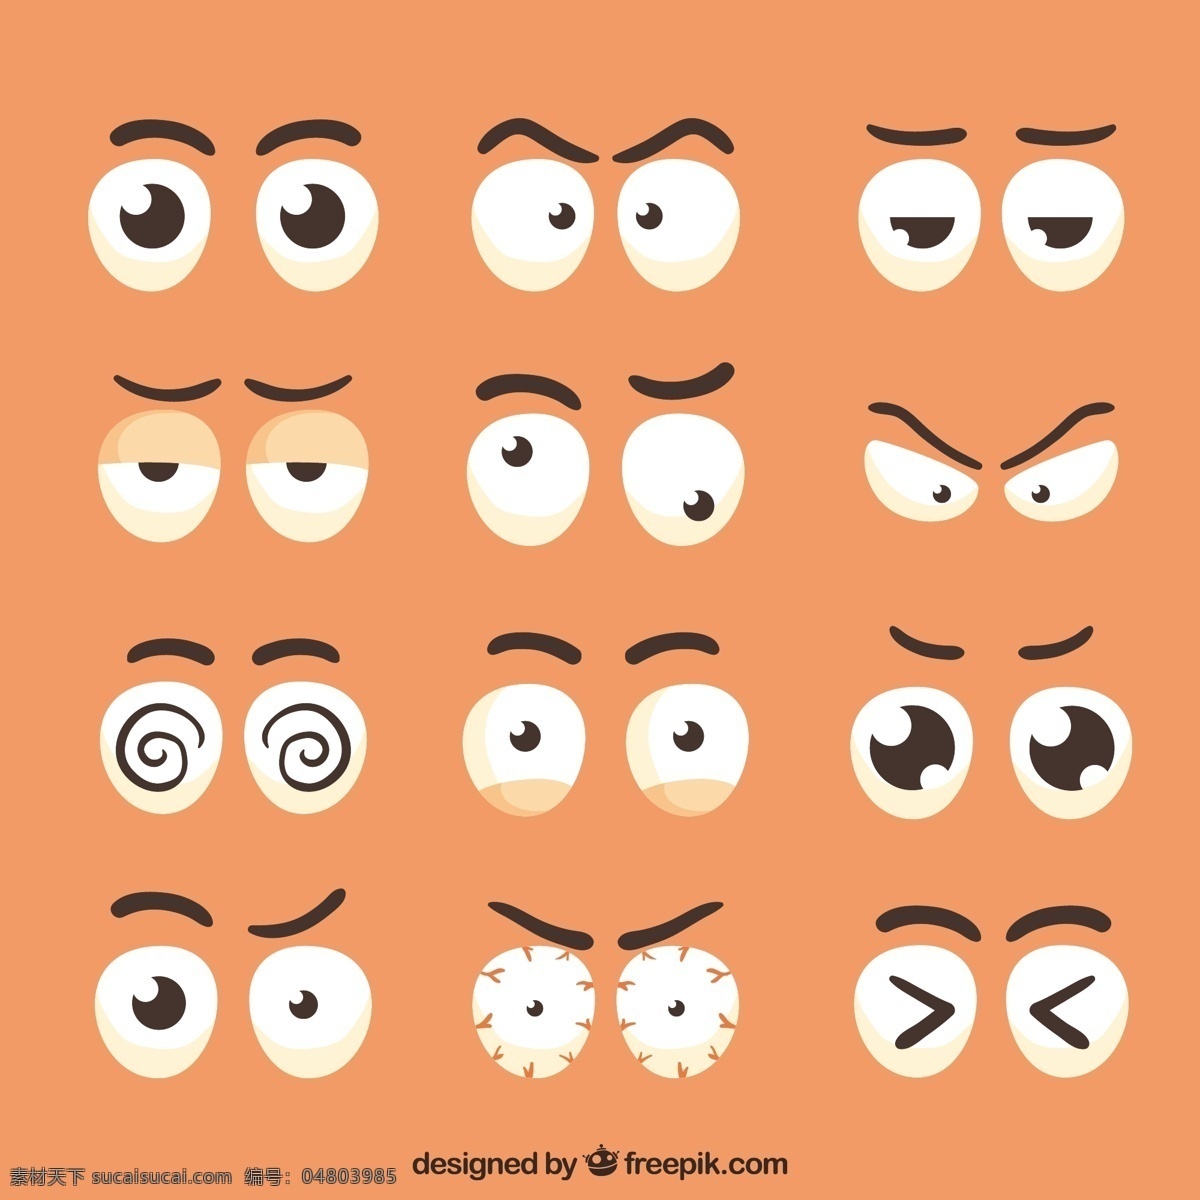 人物 眼睛 多样性 卡通 漫画 元素 卡通人物 卡通眼睛 眉毛 表情变化 小学生